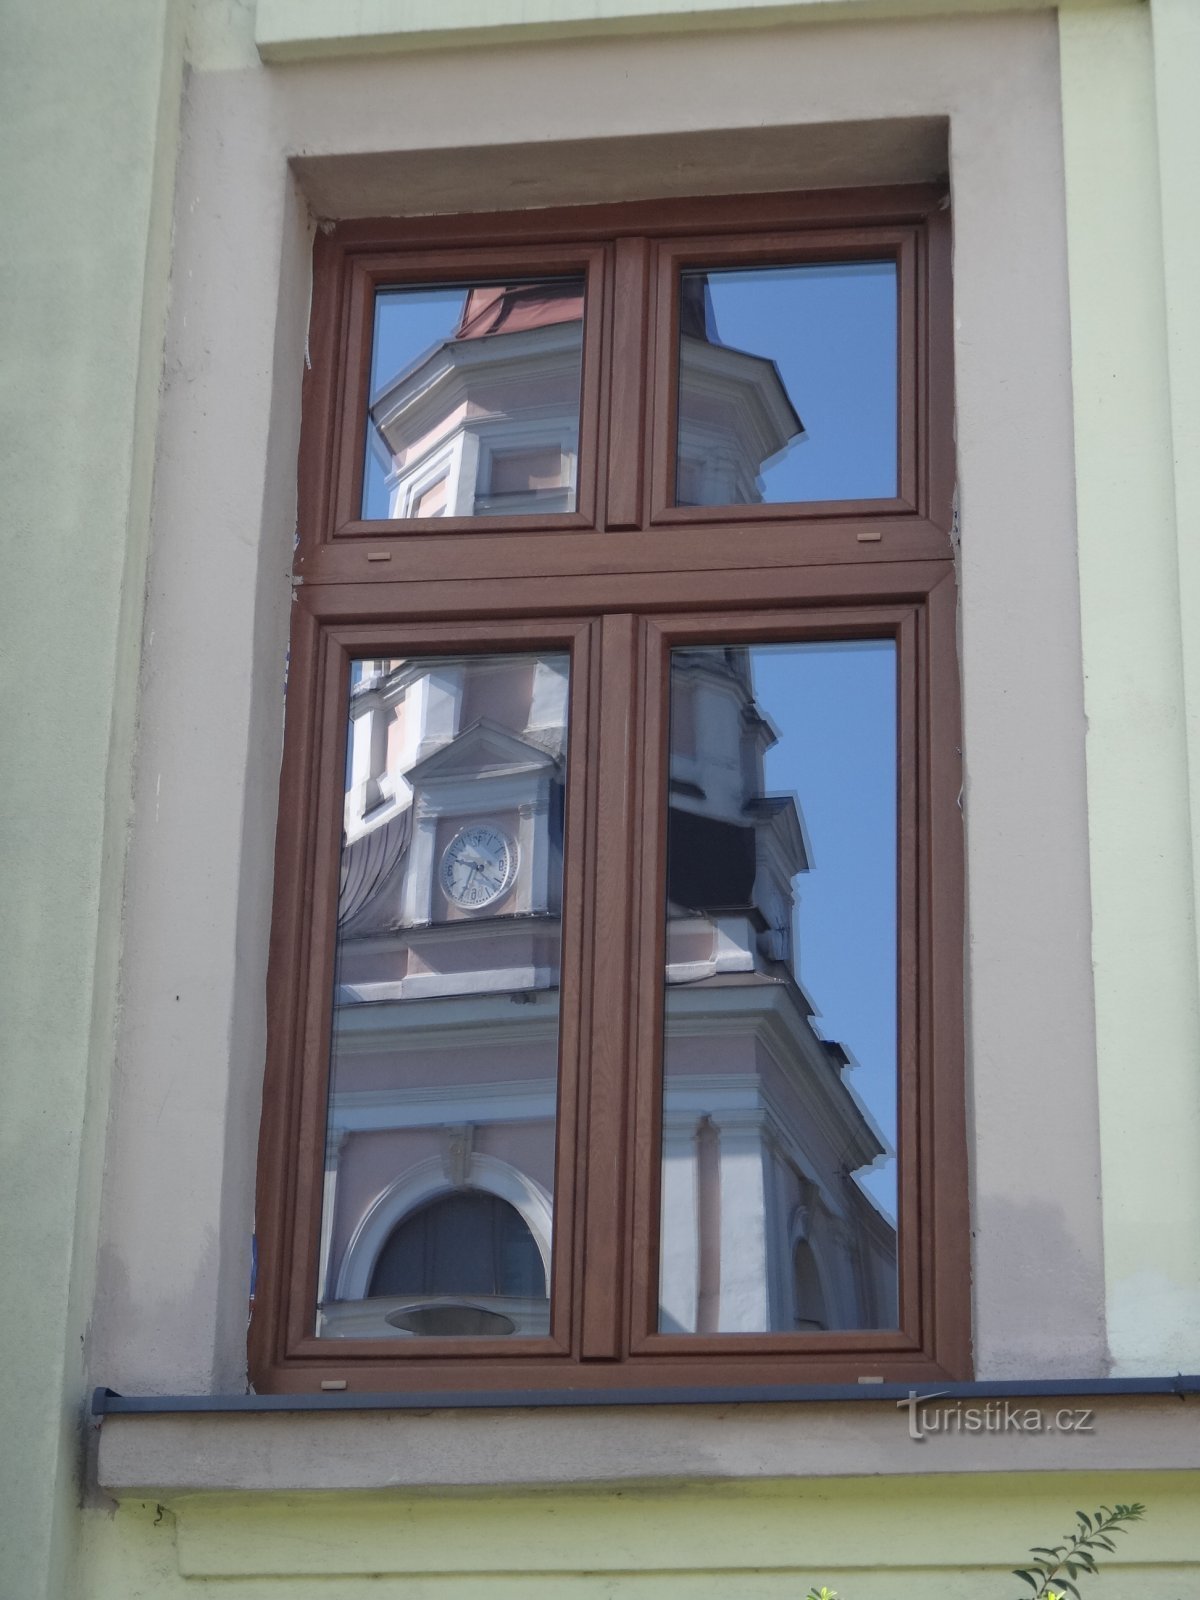 odsev cerkve v oknih mestne hiše